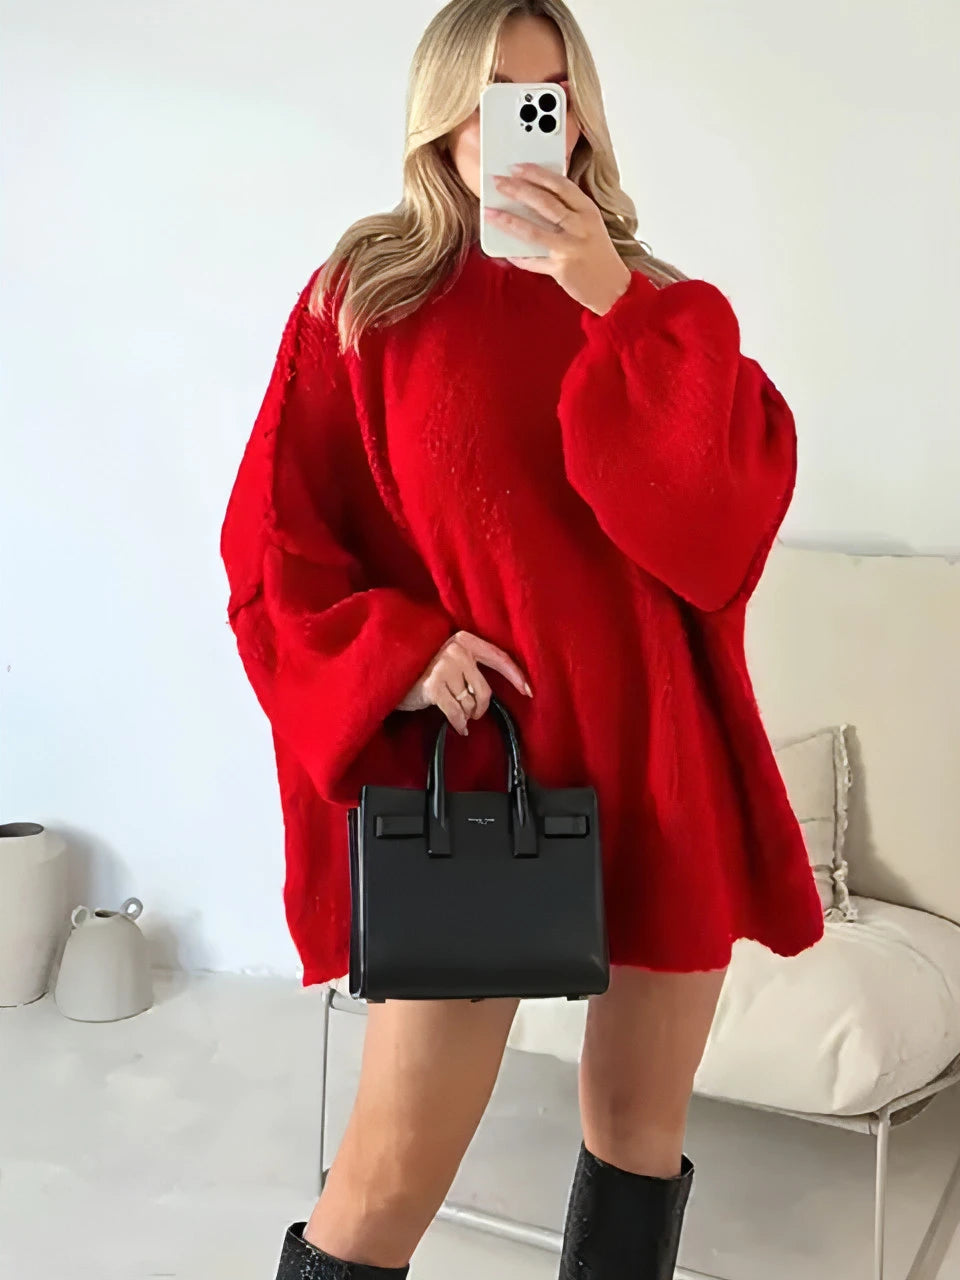 Harper Knitted Oversized Women's Sweater - Allure SocietyLoungewear Tops